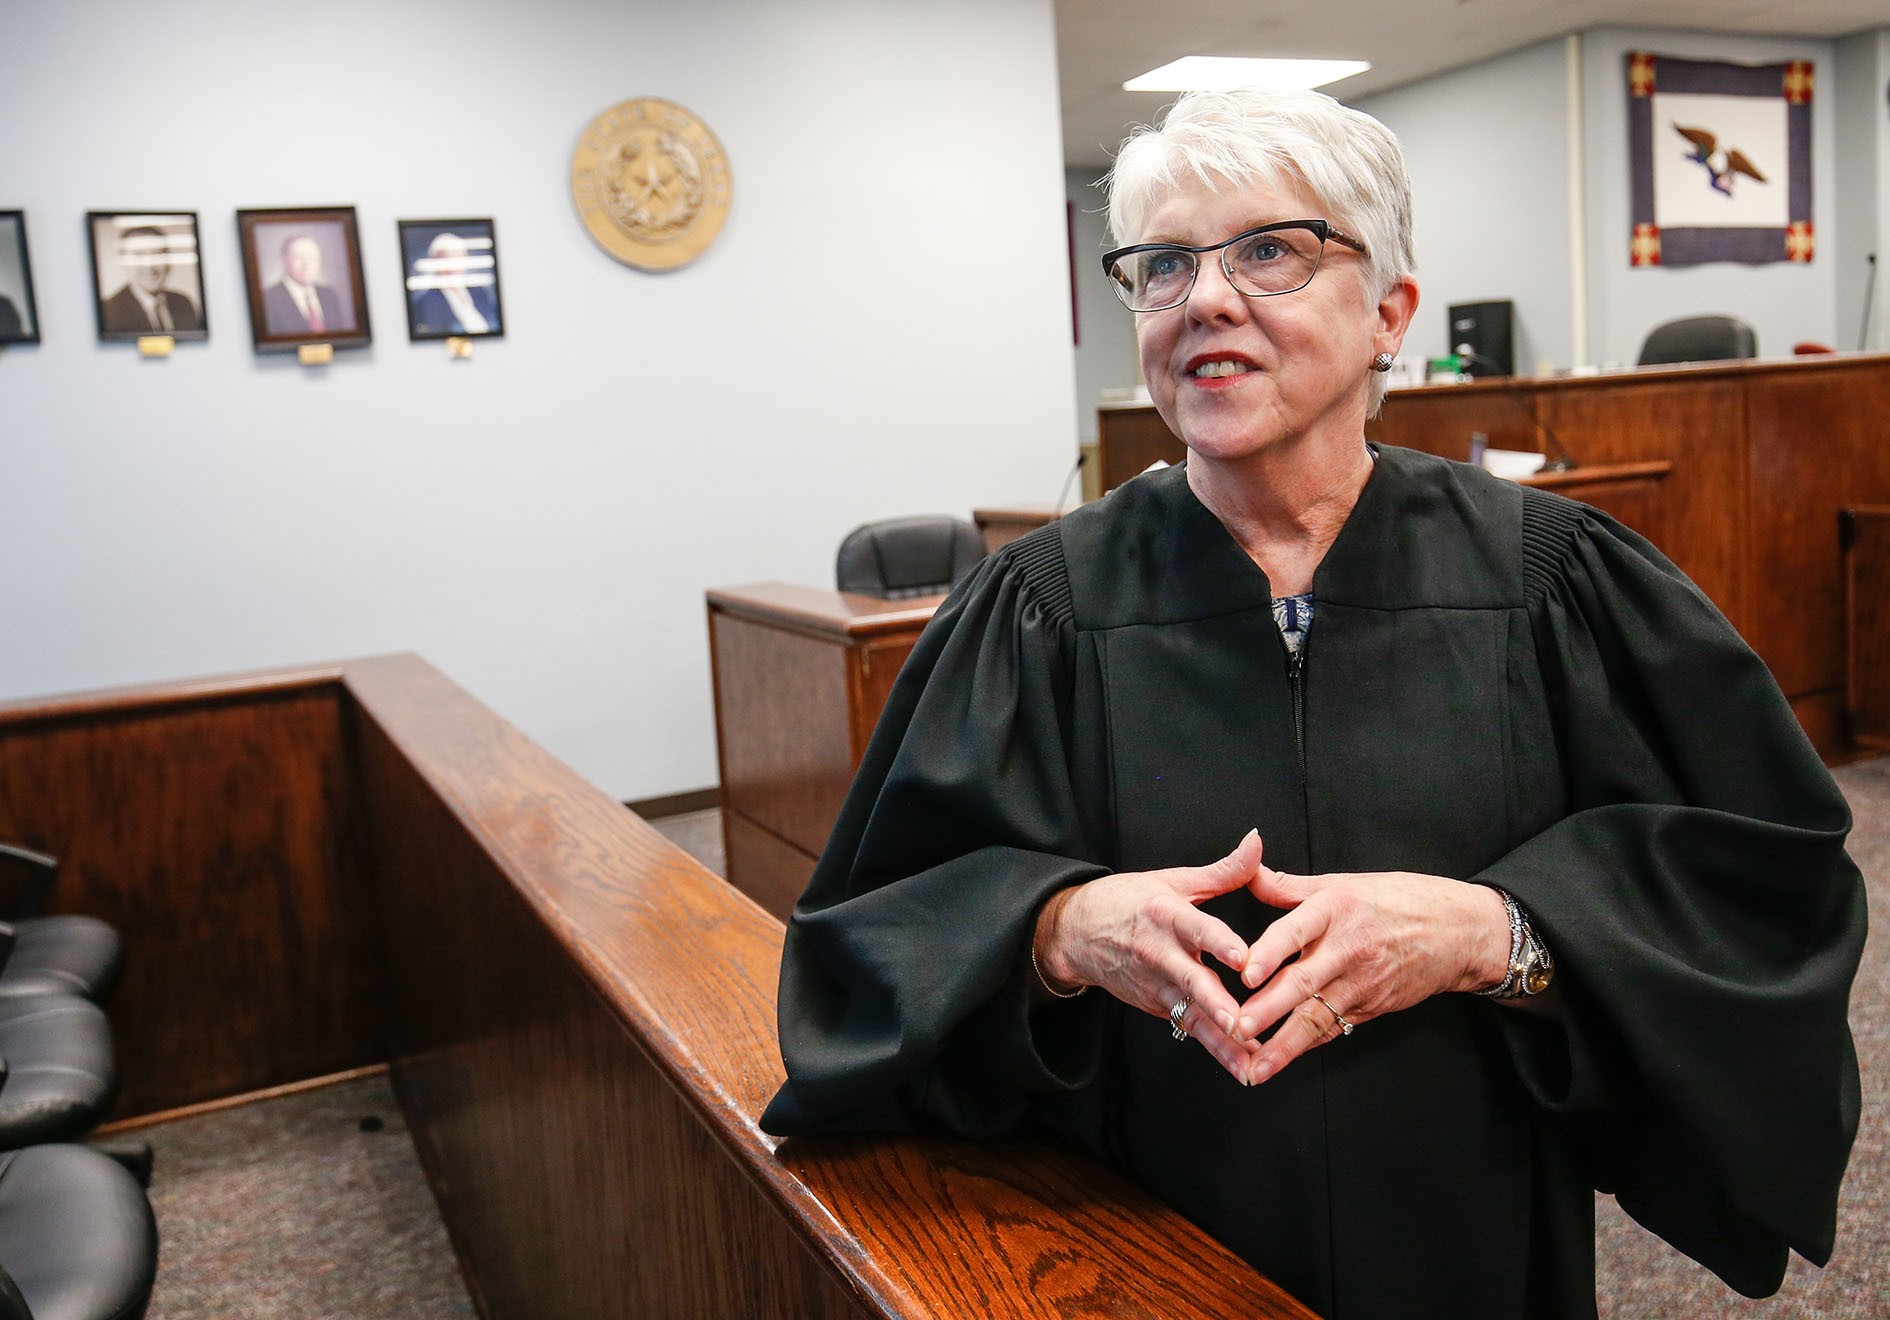 District Judge Carole Clark